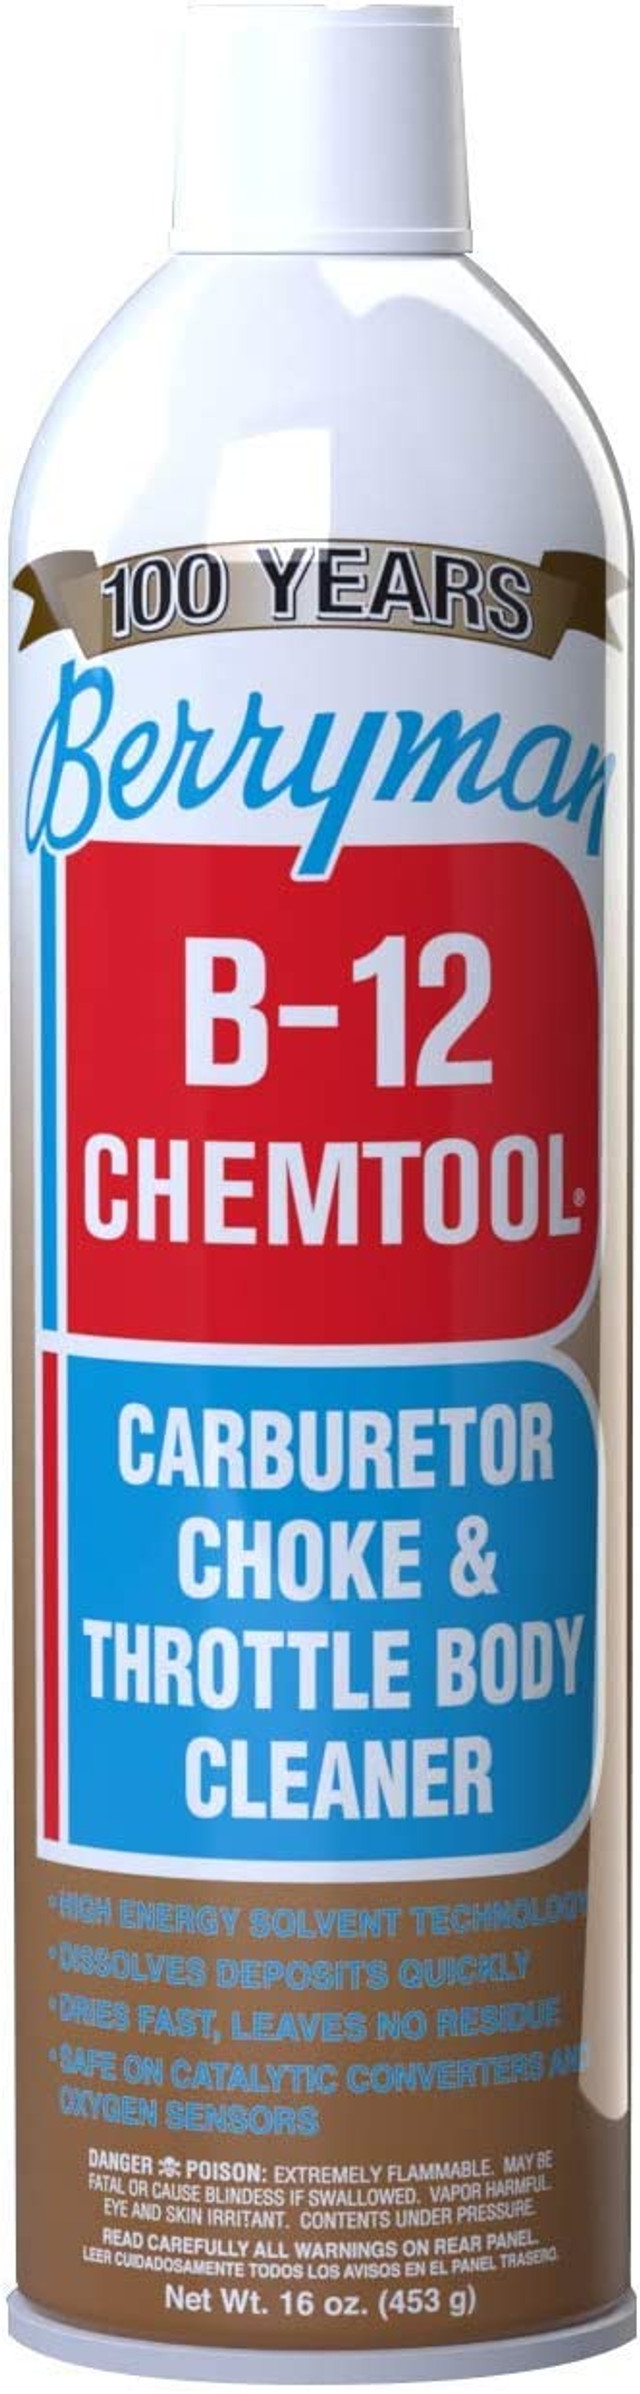 Nettoyant pour carburateur BERRYMAN b-12 chemtool (0117)